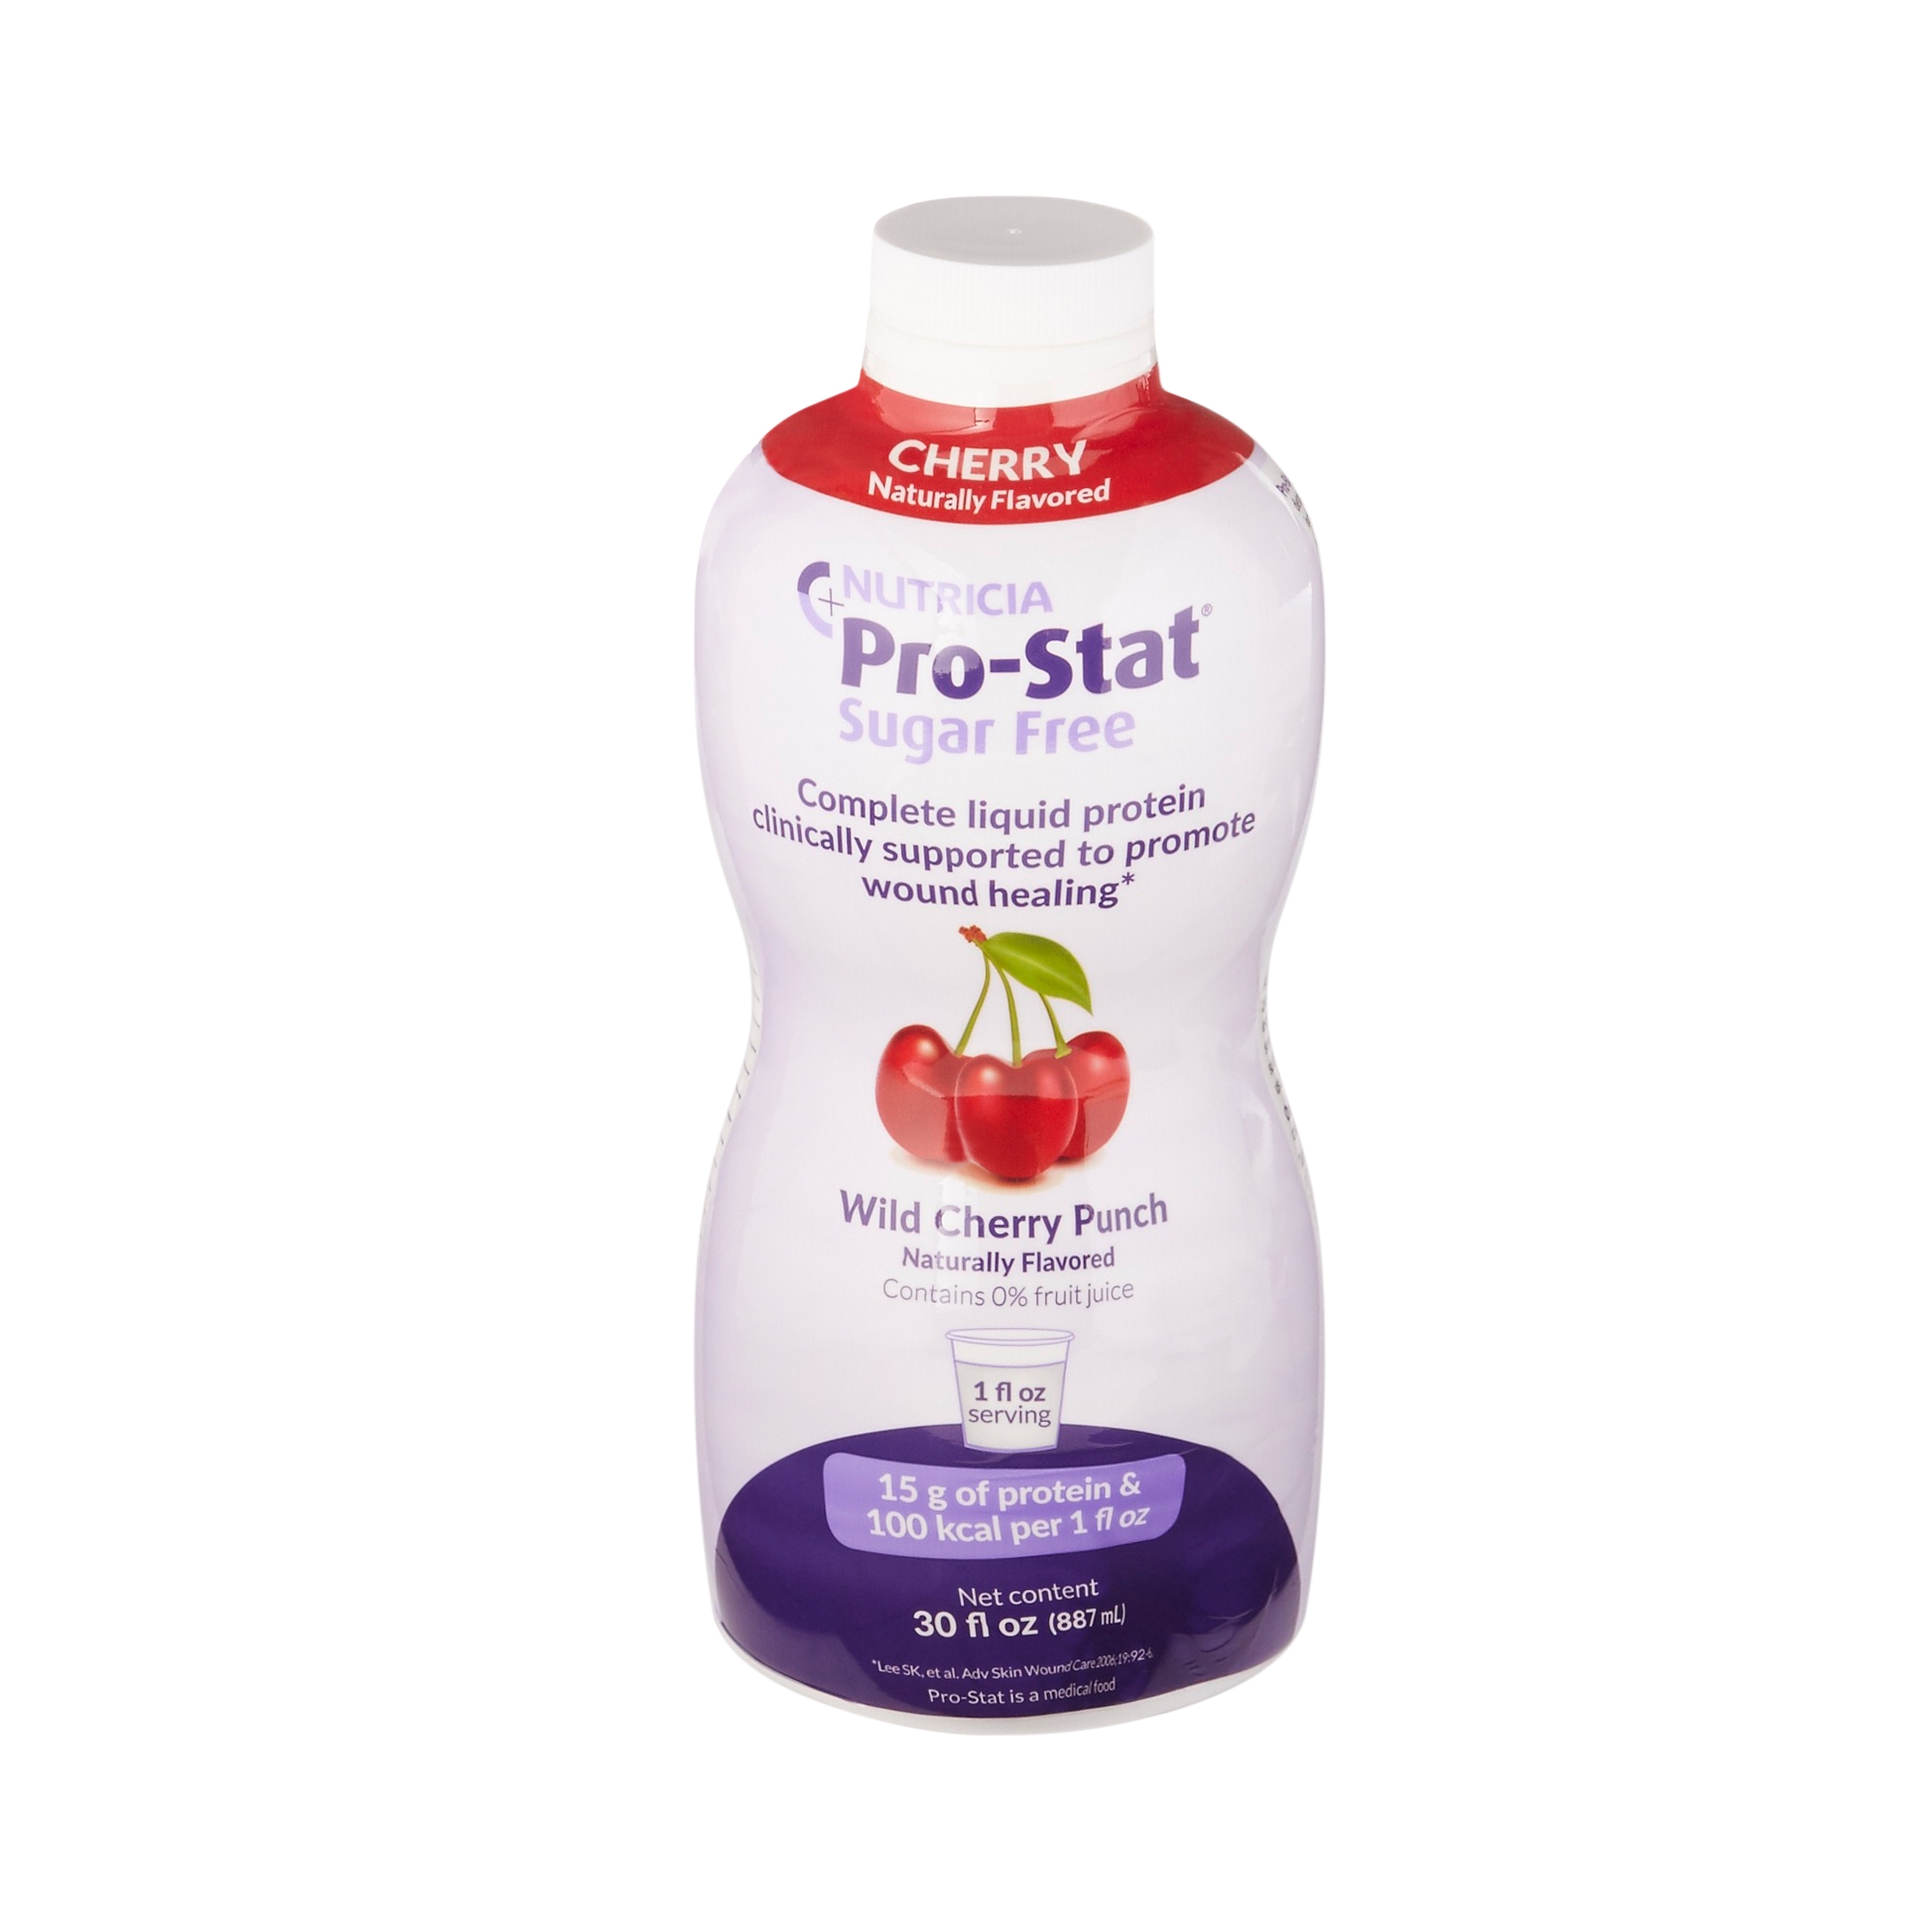 Pro-Stat Sugar-Free Wild Cherry Punch Protein Supplement, 30 oz. Bottle